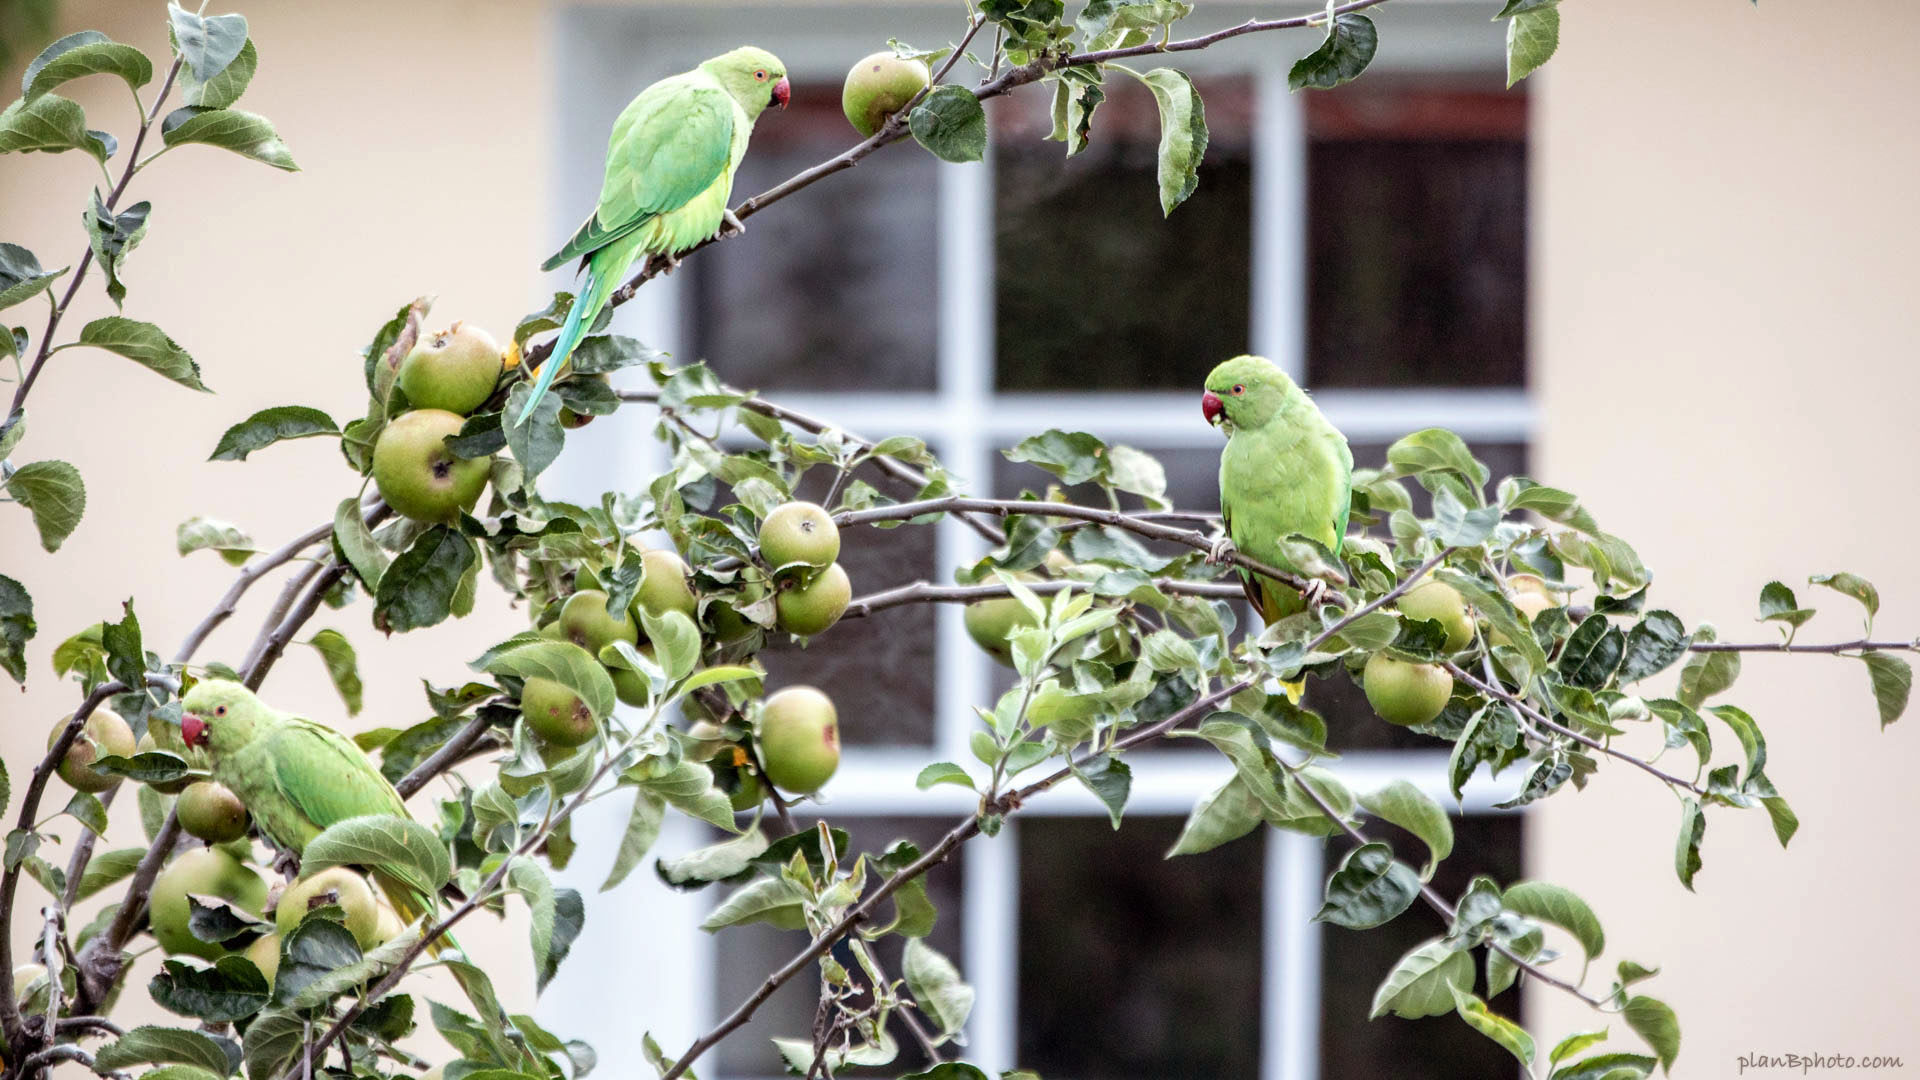 Green parrots on an apple tree in London